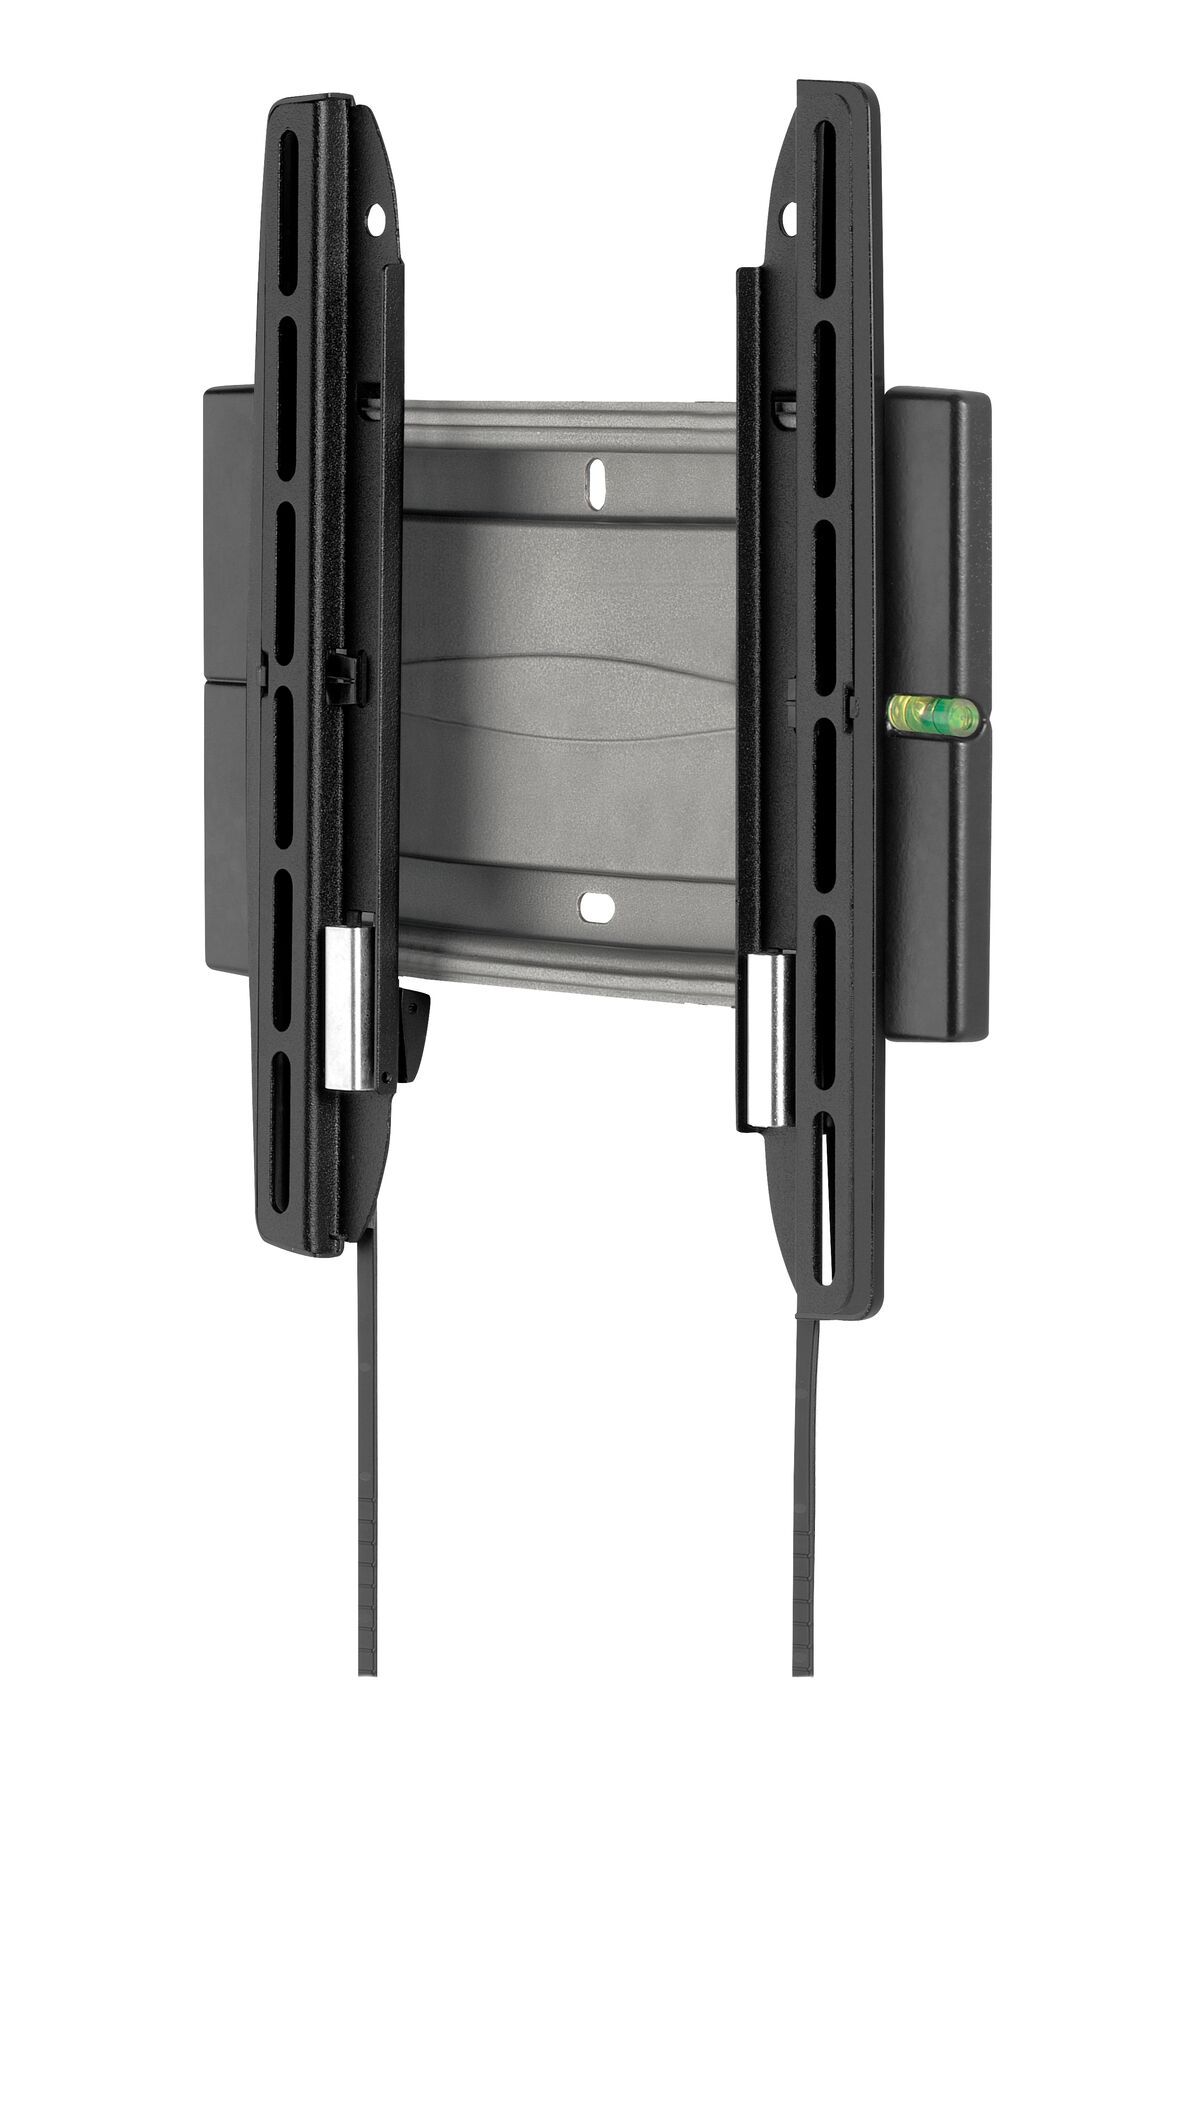 Vogel's EFW 8105 Flache TV-Wandhalterung - Geeignet für Fernseher von 19 bis 40 Zoll und einem Gewicht bis zu 20 kg - Product